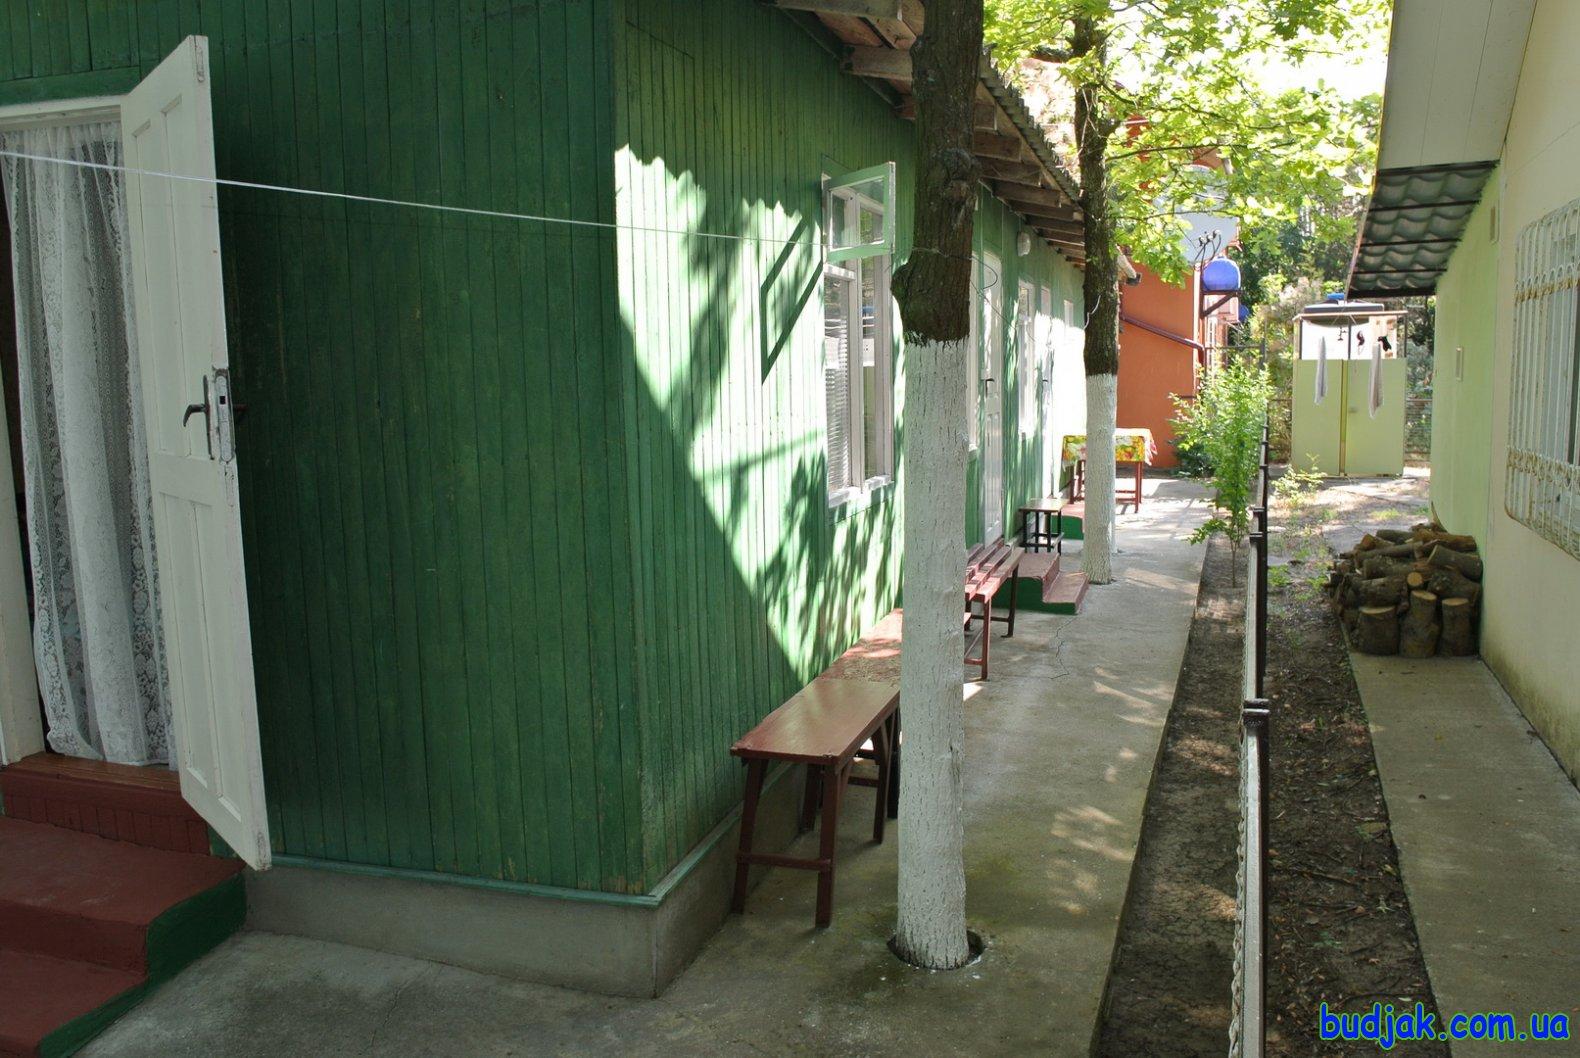 Частный коттедж отдыха «Дубовая роща» на курорте Лебедевка. Фото № 10986